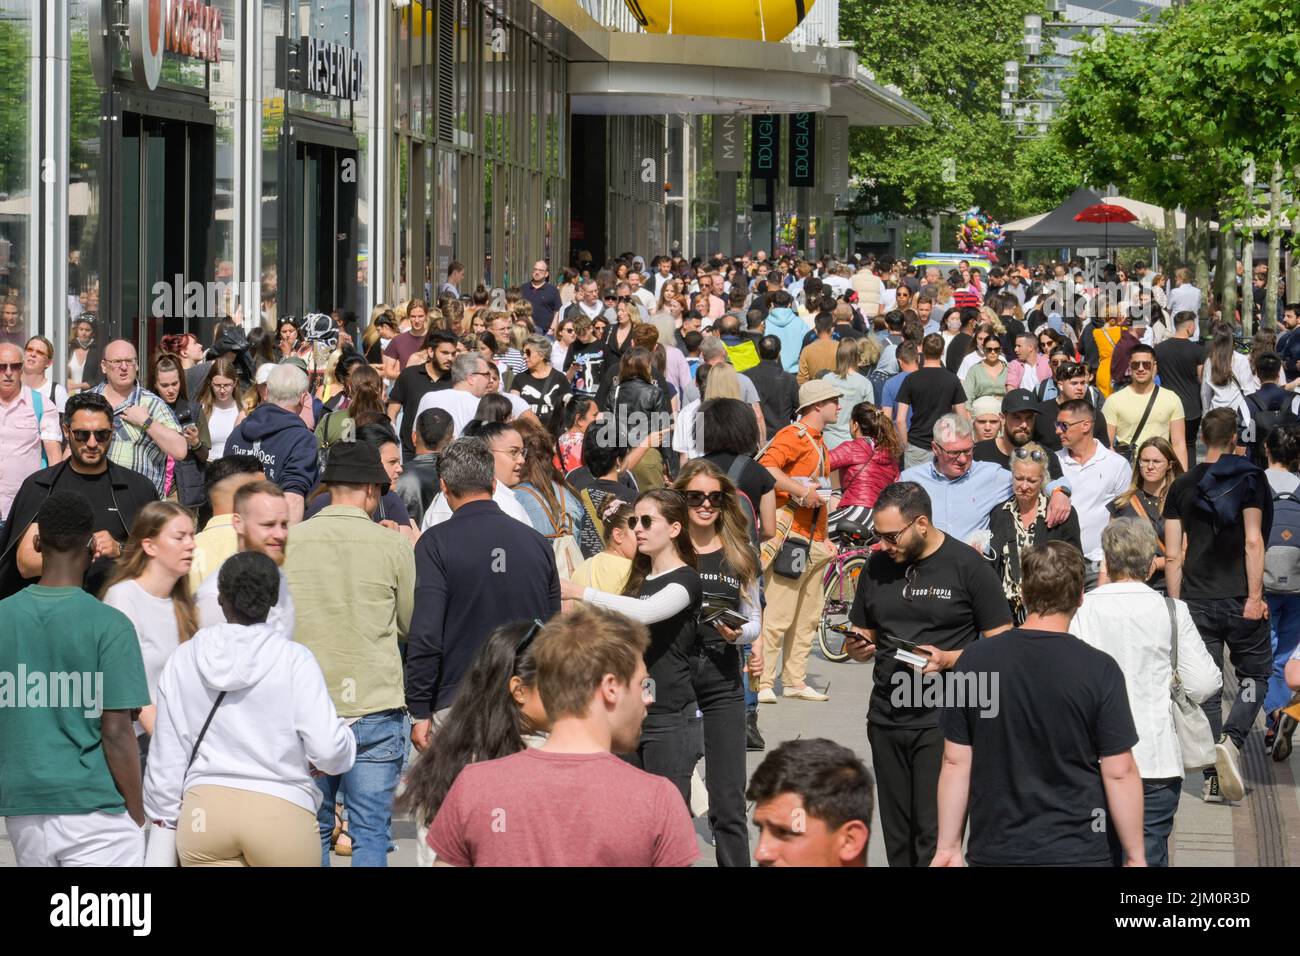 Menschenmenge, Passanten, Einkaufsstraße, Zeil, Frankfurt am Main, Hessen, Deutschland Stock Photo